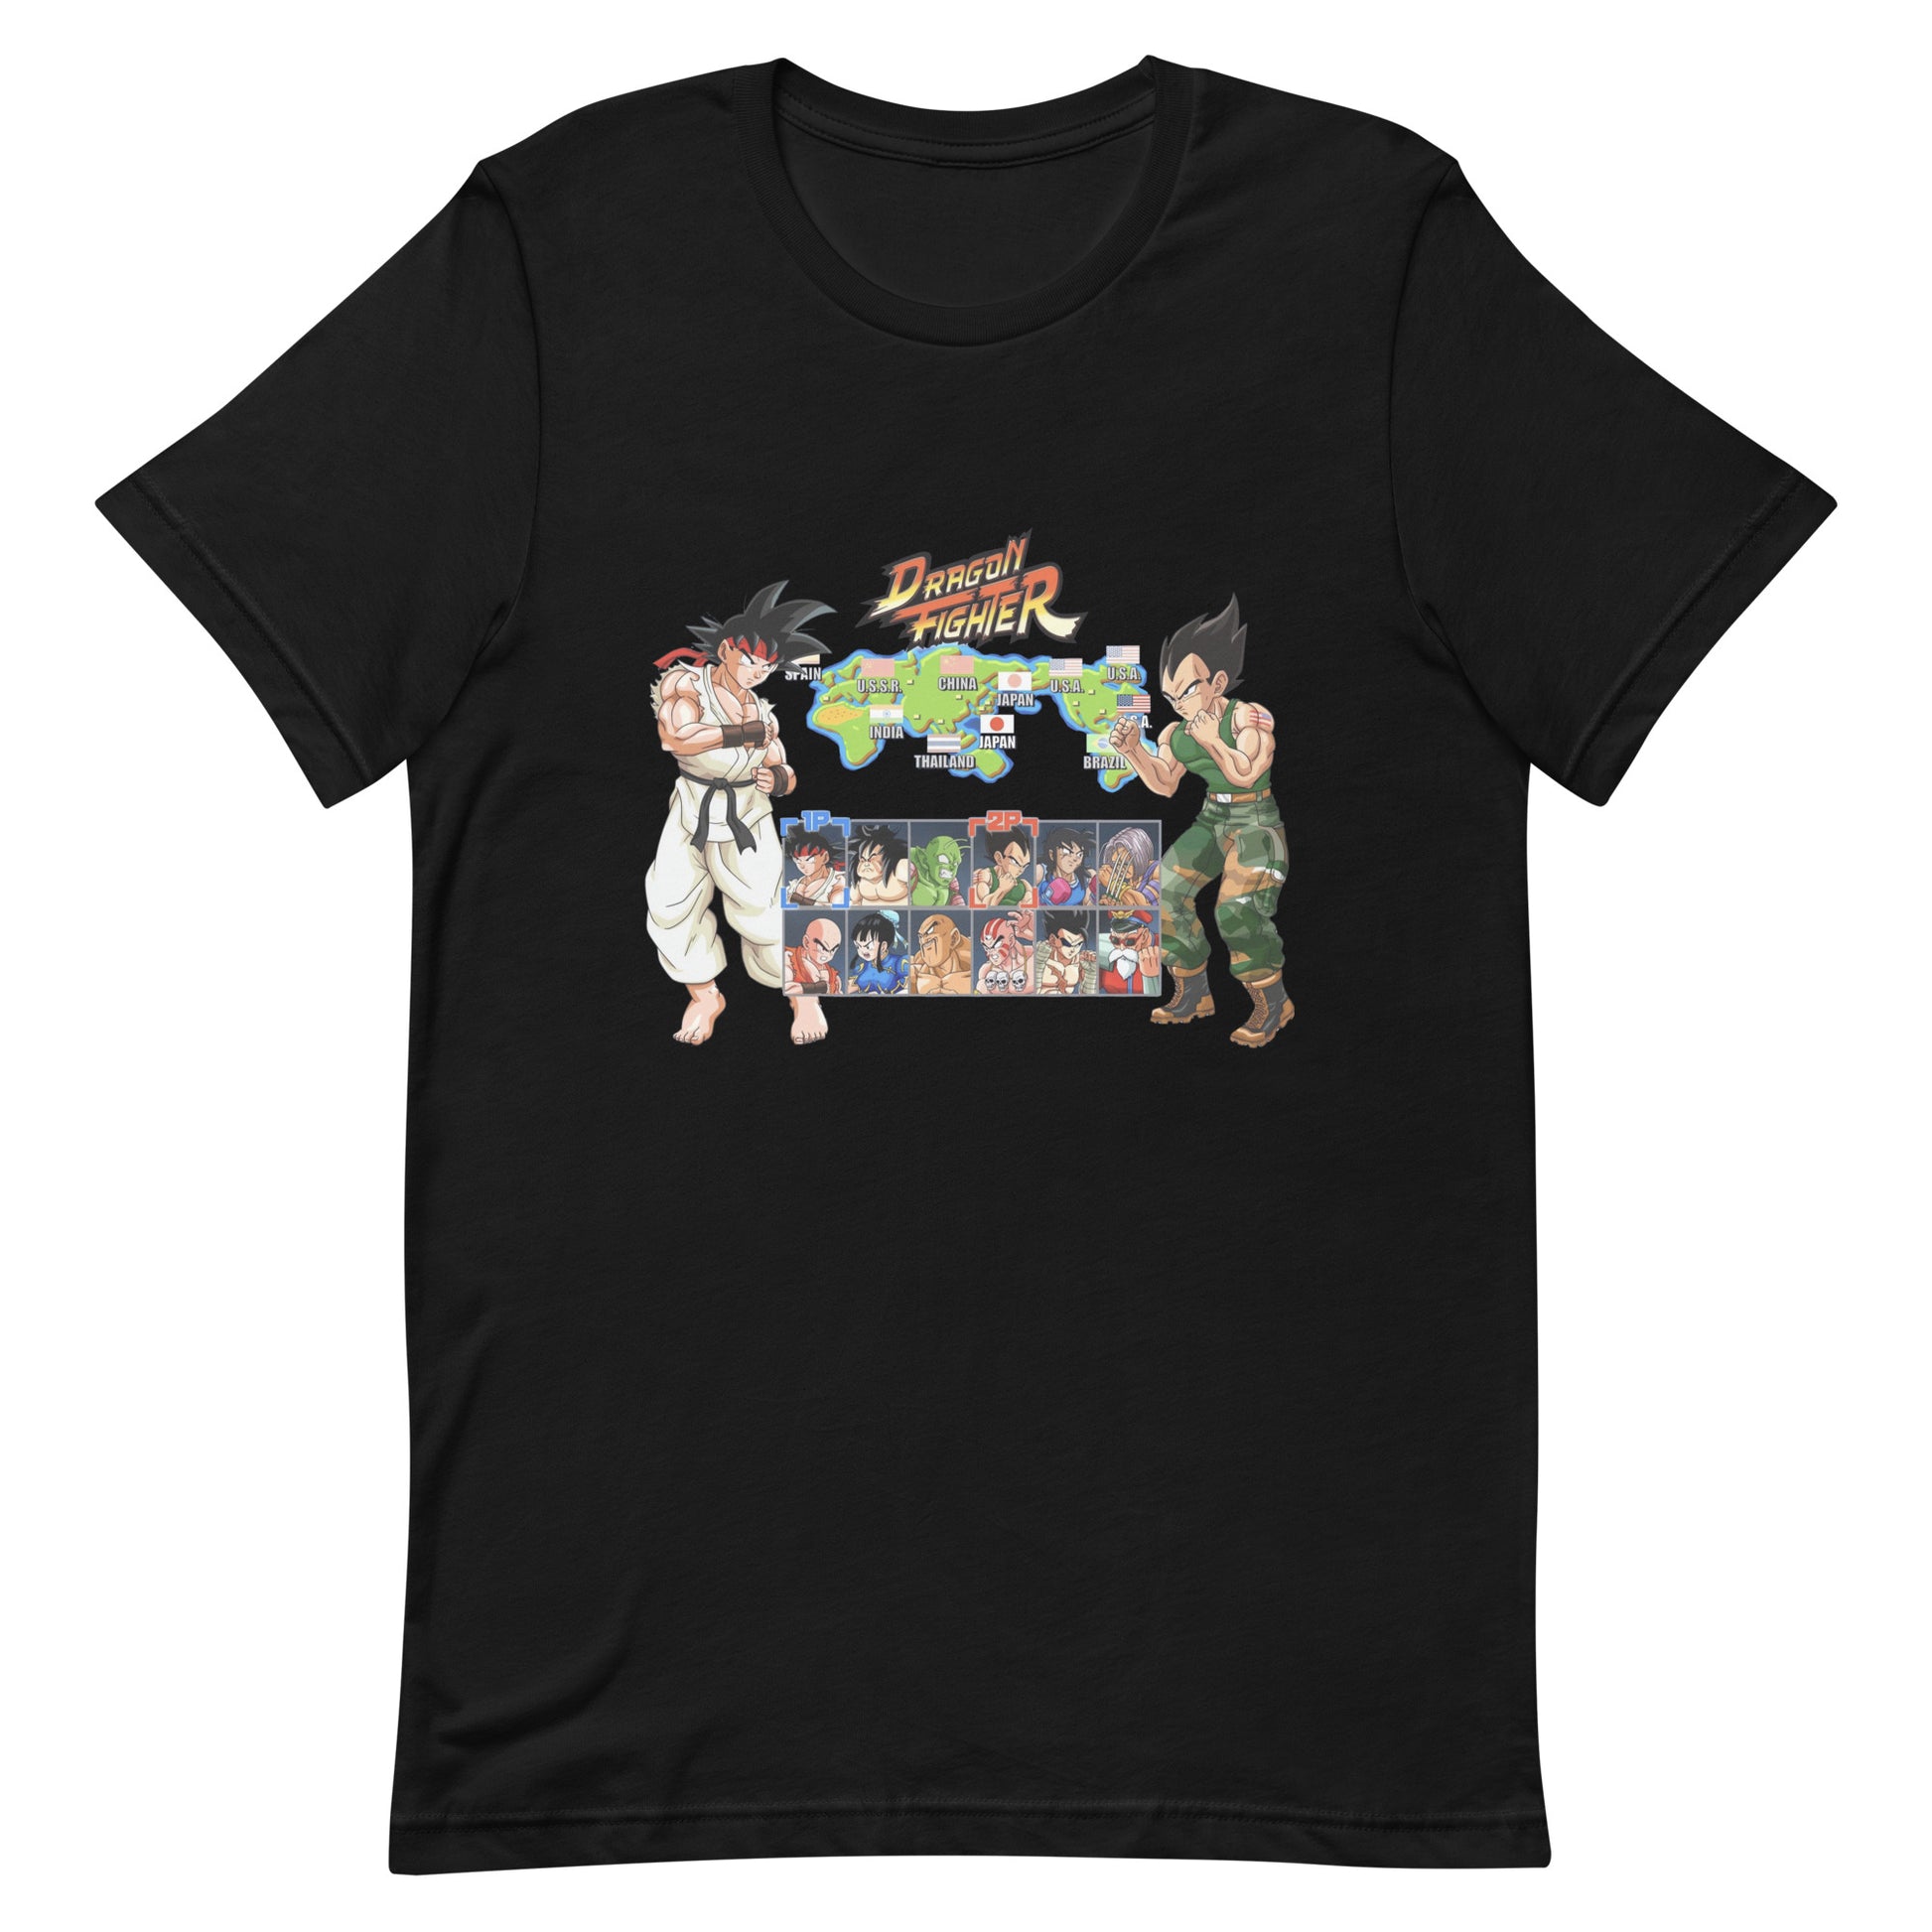 ¡Compra el mejor merchandising en Superstar! Encuentra diseños únicos y de alta calidad en camisetas únicas, Camiseta Dragon Fighter